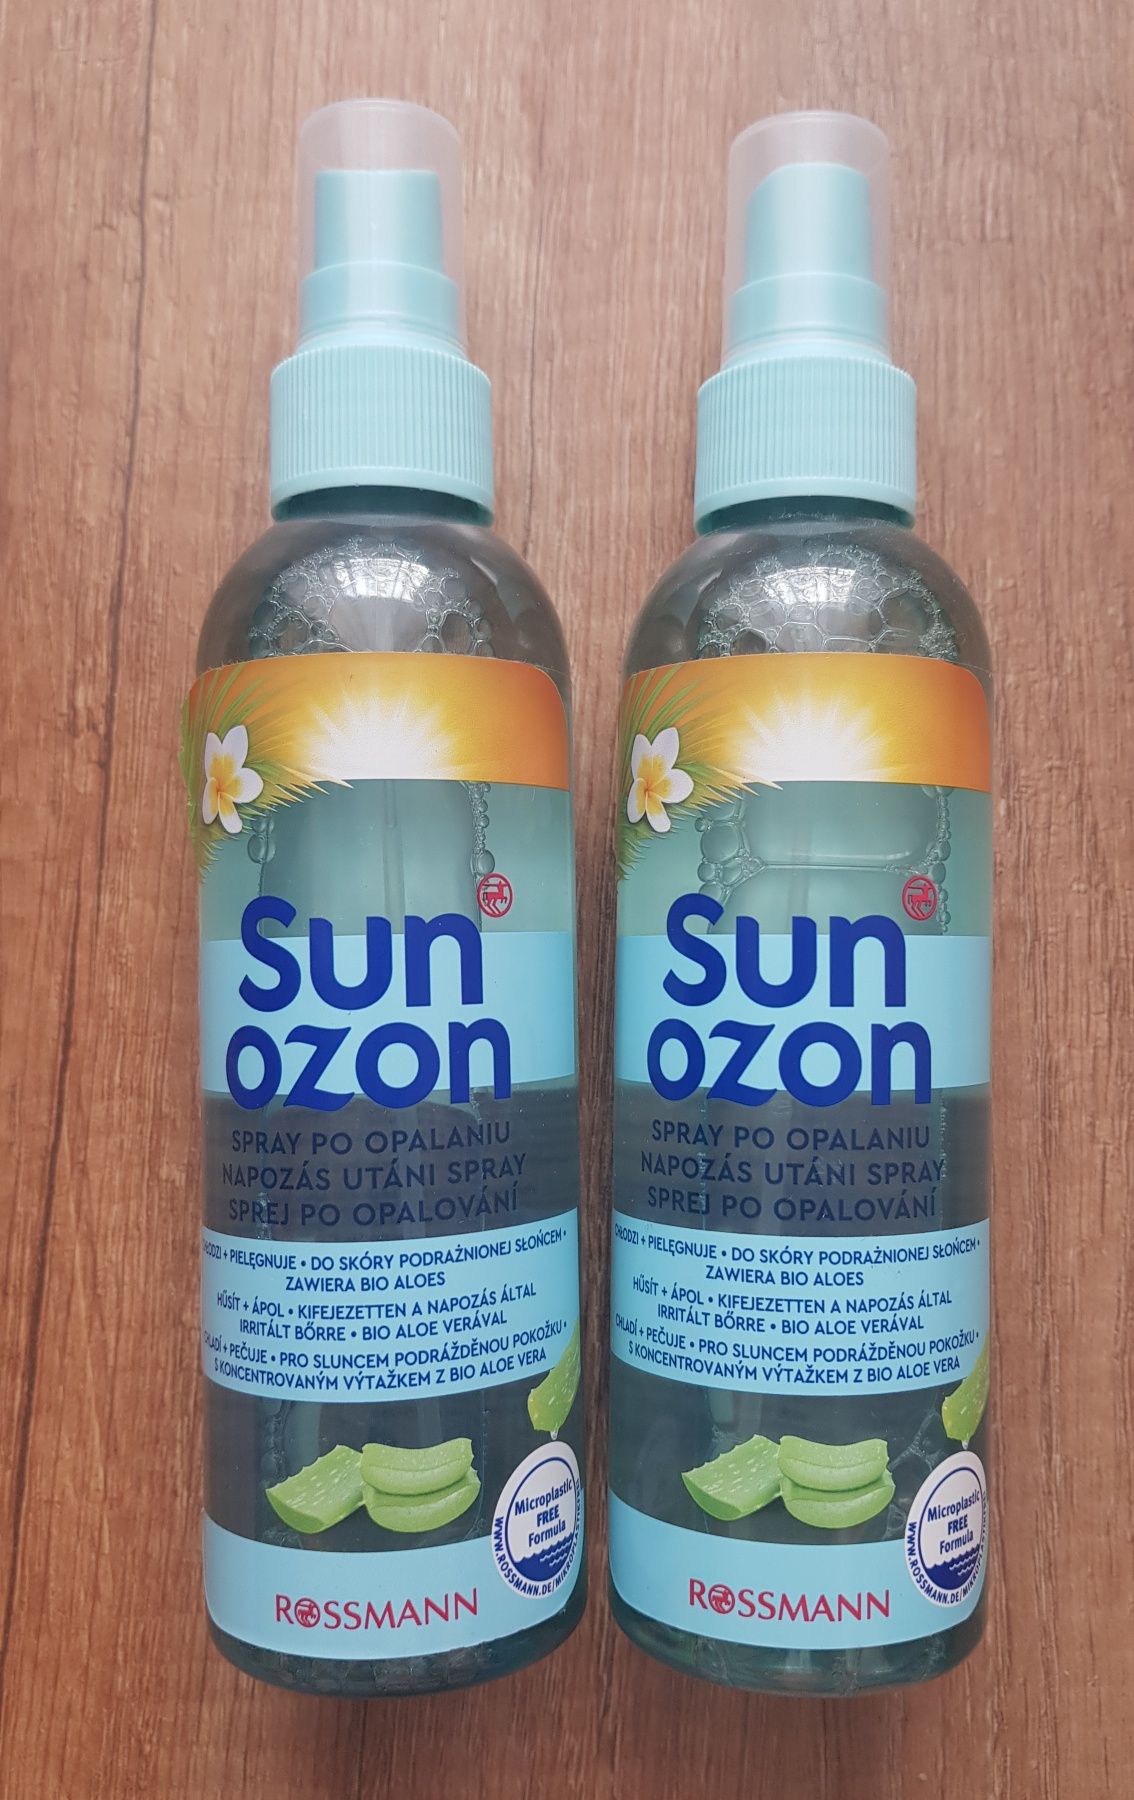 Sun ozon spray chłodzący po opalaniu bio aloes 200ml